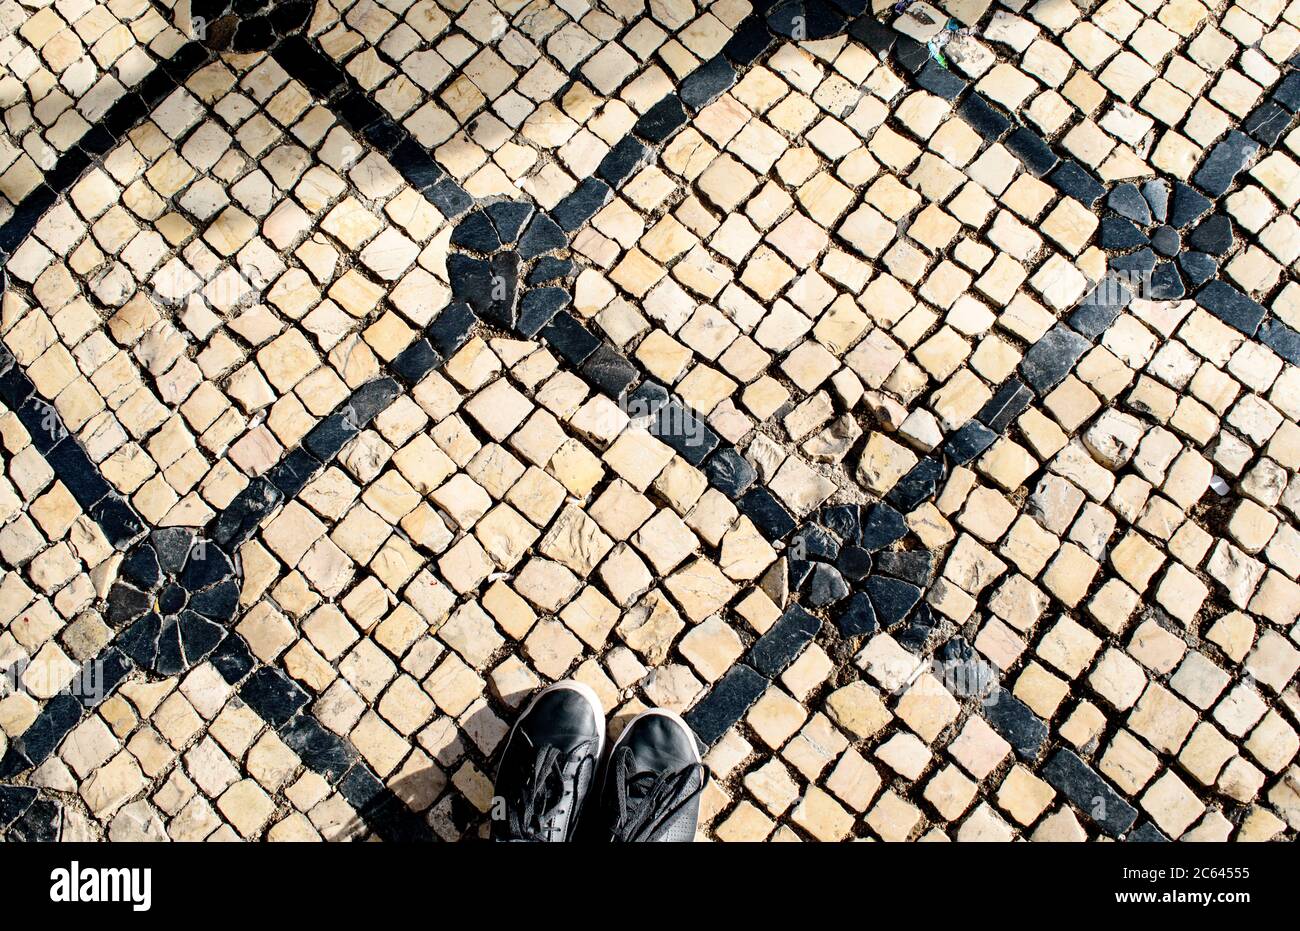 Un paio di scarpe nere si trovano su calcada bianco e nero, pietre portoghesi in pietra a mosaico, su Rua Garrett a Lisbona. Foto Stock